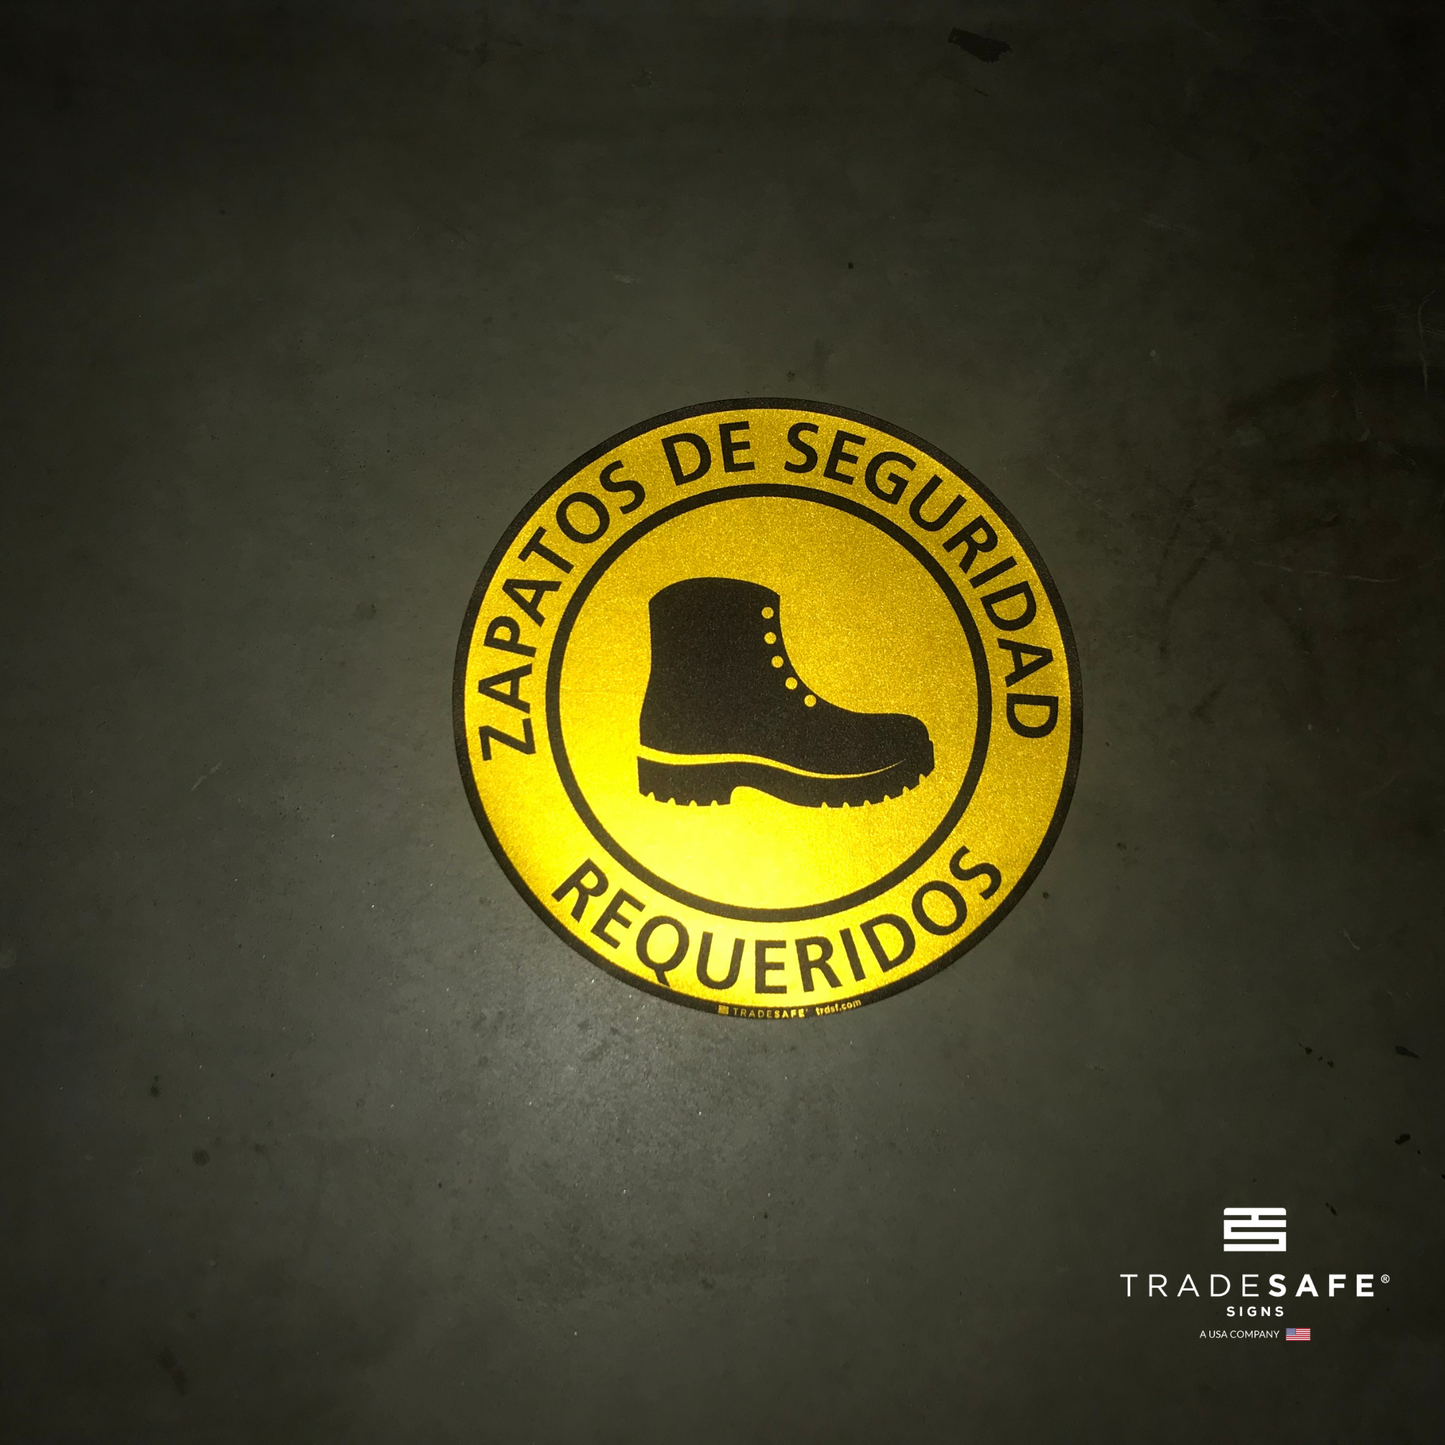 reflective attribute of adhesive vinyl "zapatos de seguridad requeridos" sign in black background